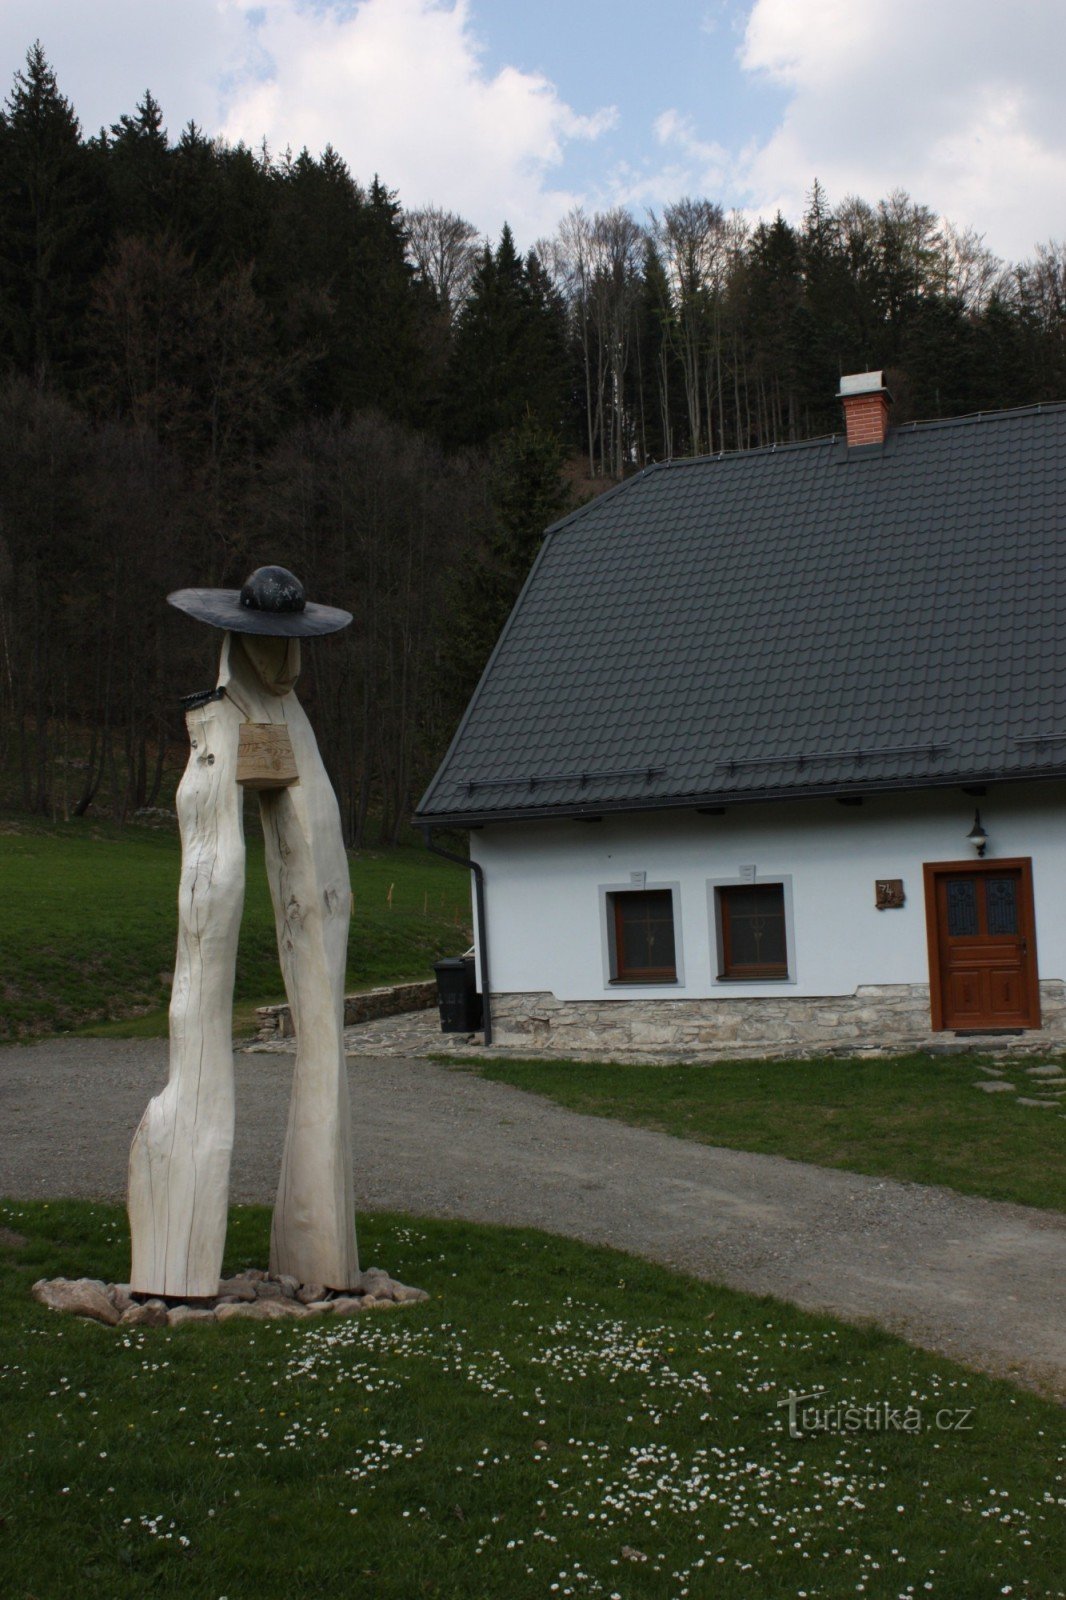 Hütte Pod Sviní horou im Dorf Vláská am Fuße des Massivs Kralické Sněžník